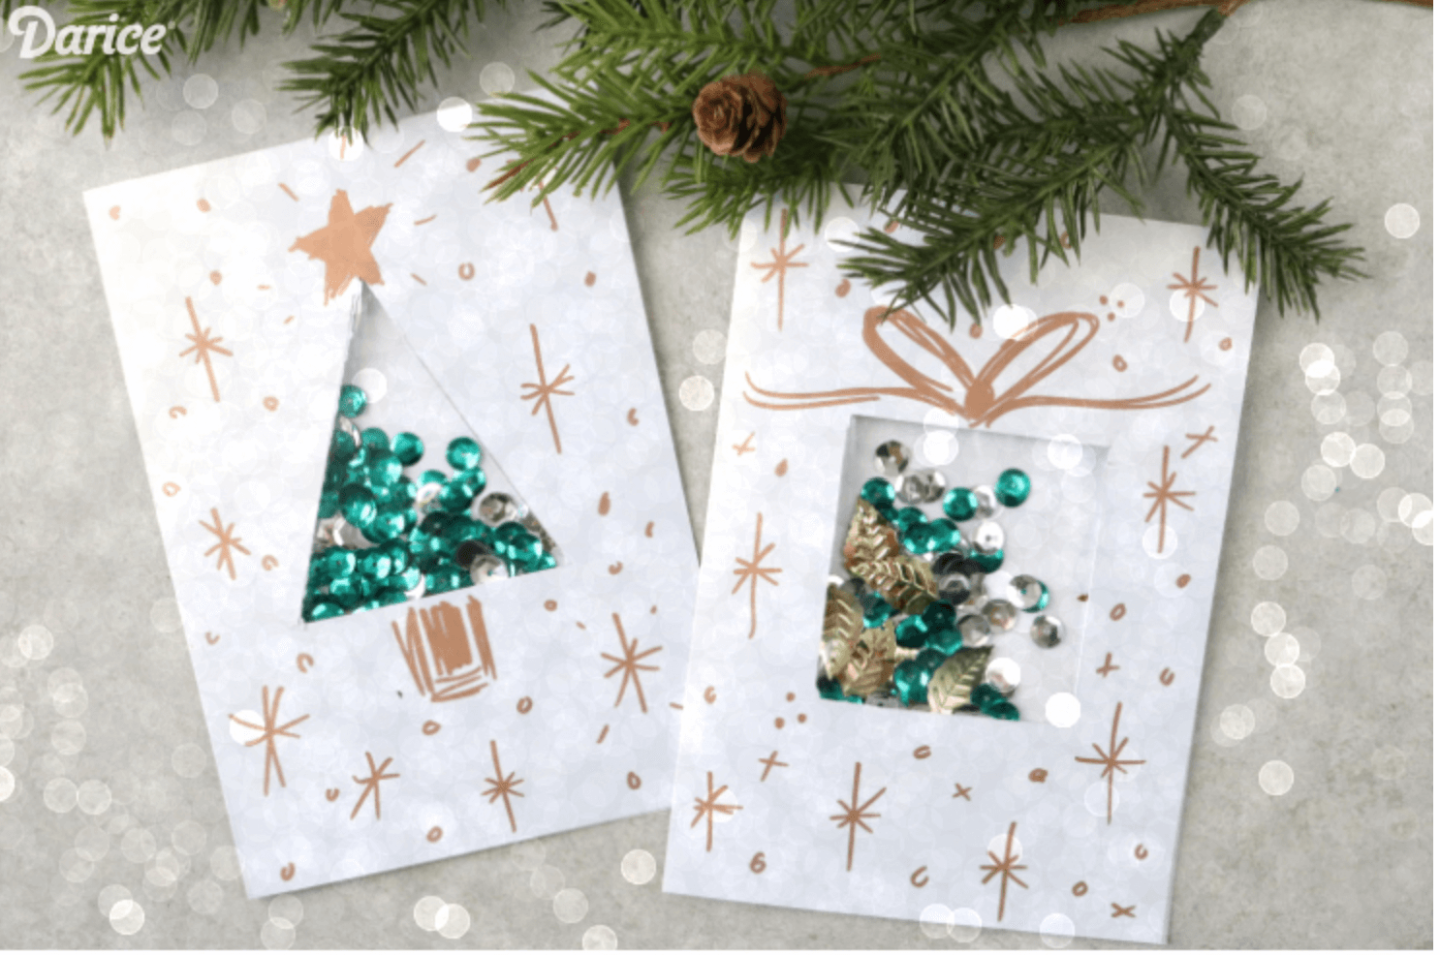  Christmas cards ideas